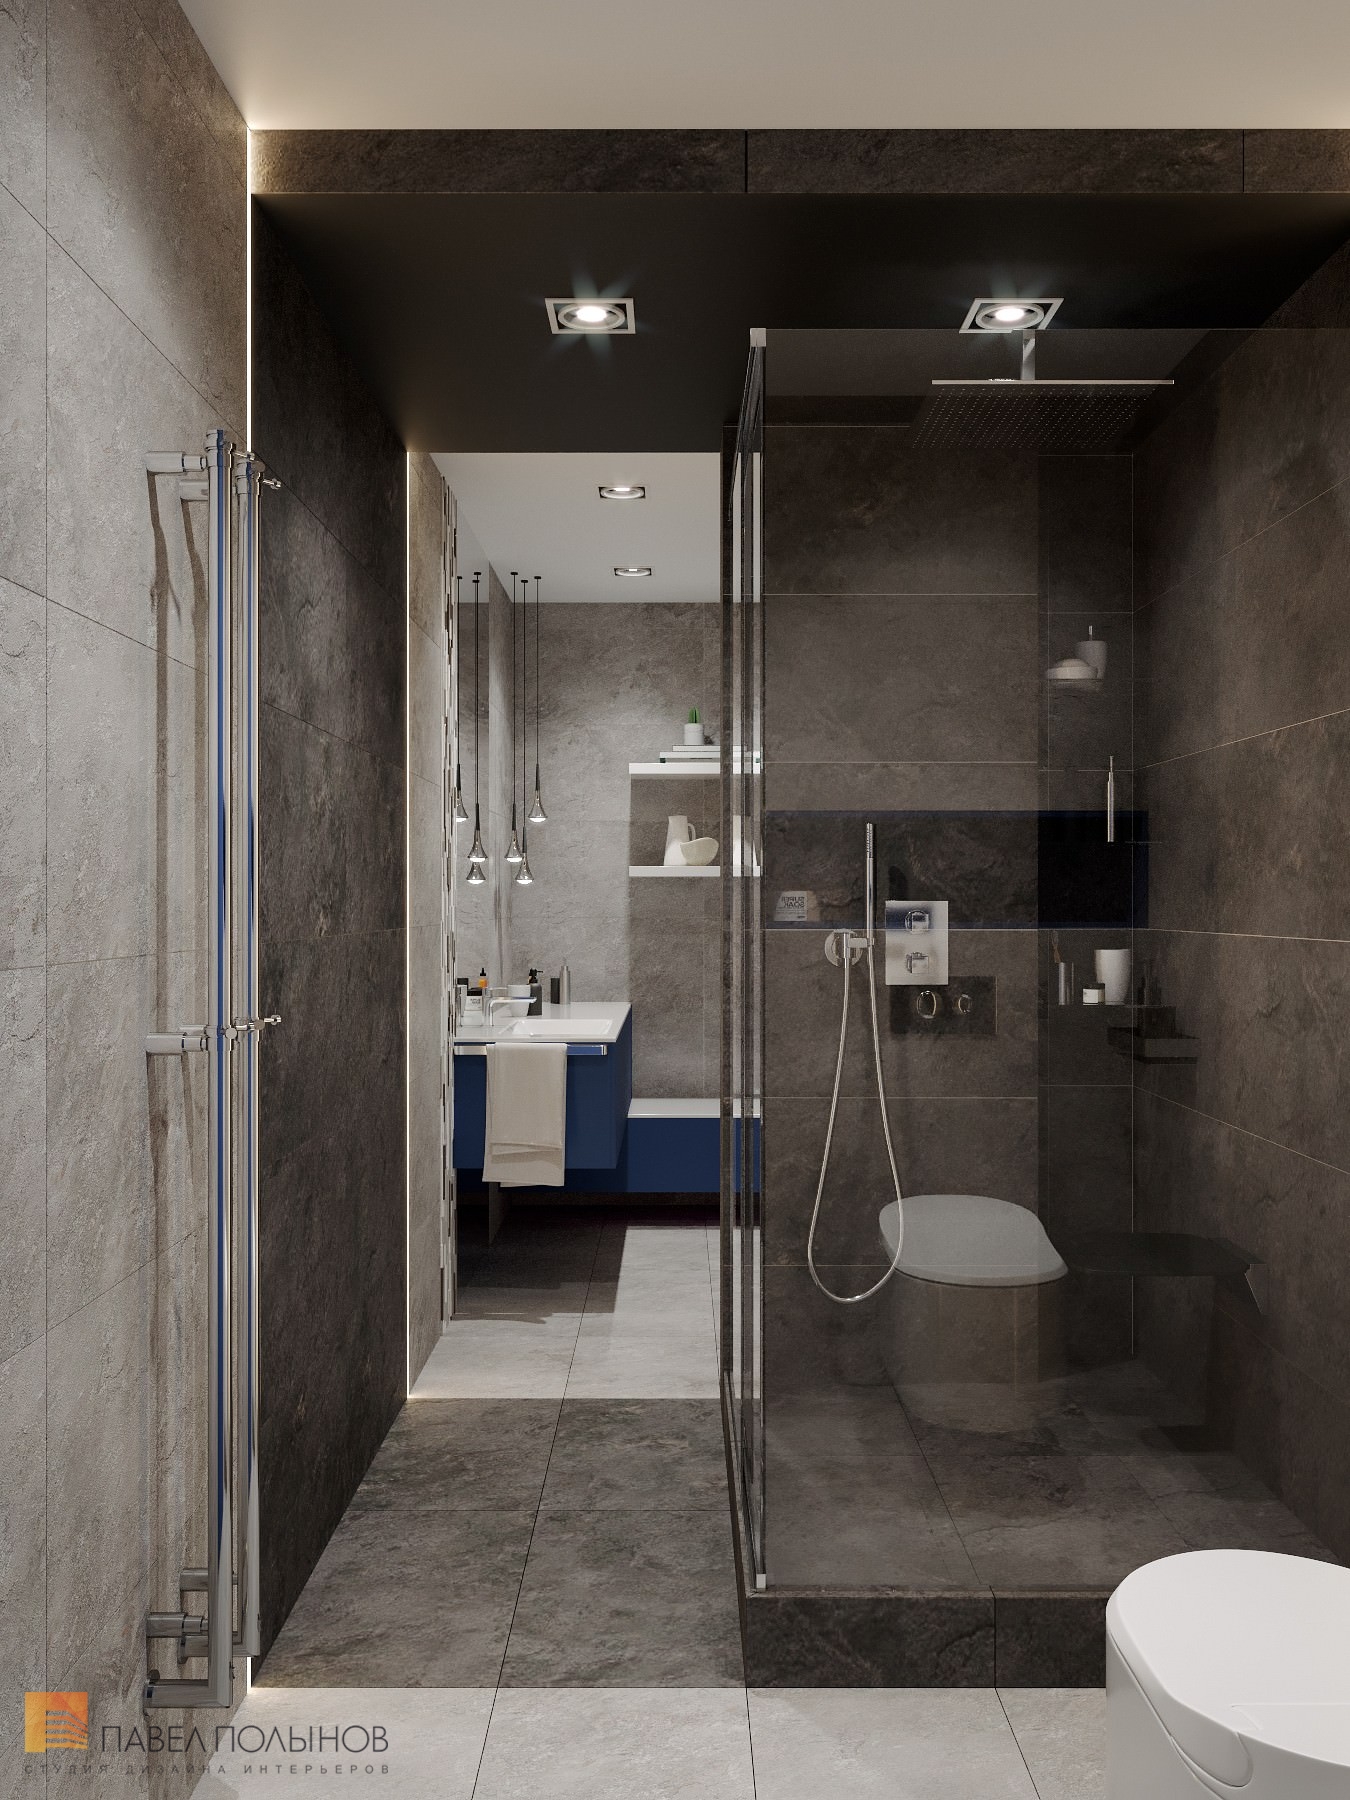 Фото дизайн интерьера ванной комнаты из проекта «Дизайн интерьер квартиры в ЖК «Кремлевские звезды», современный стиль, 133 кв.м.»